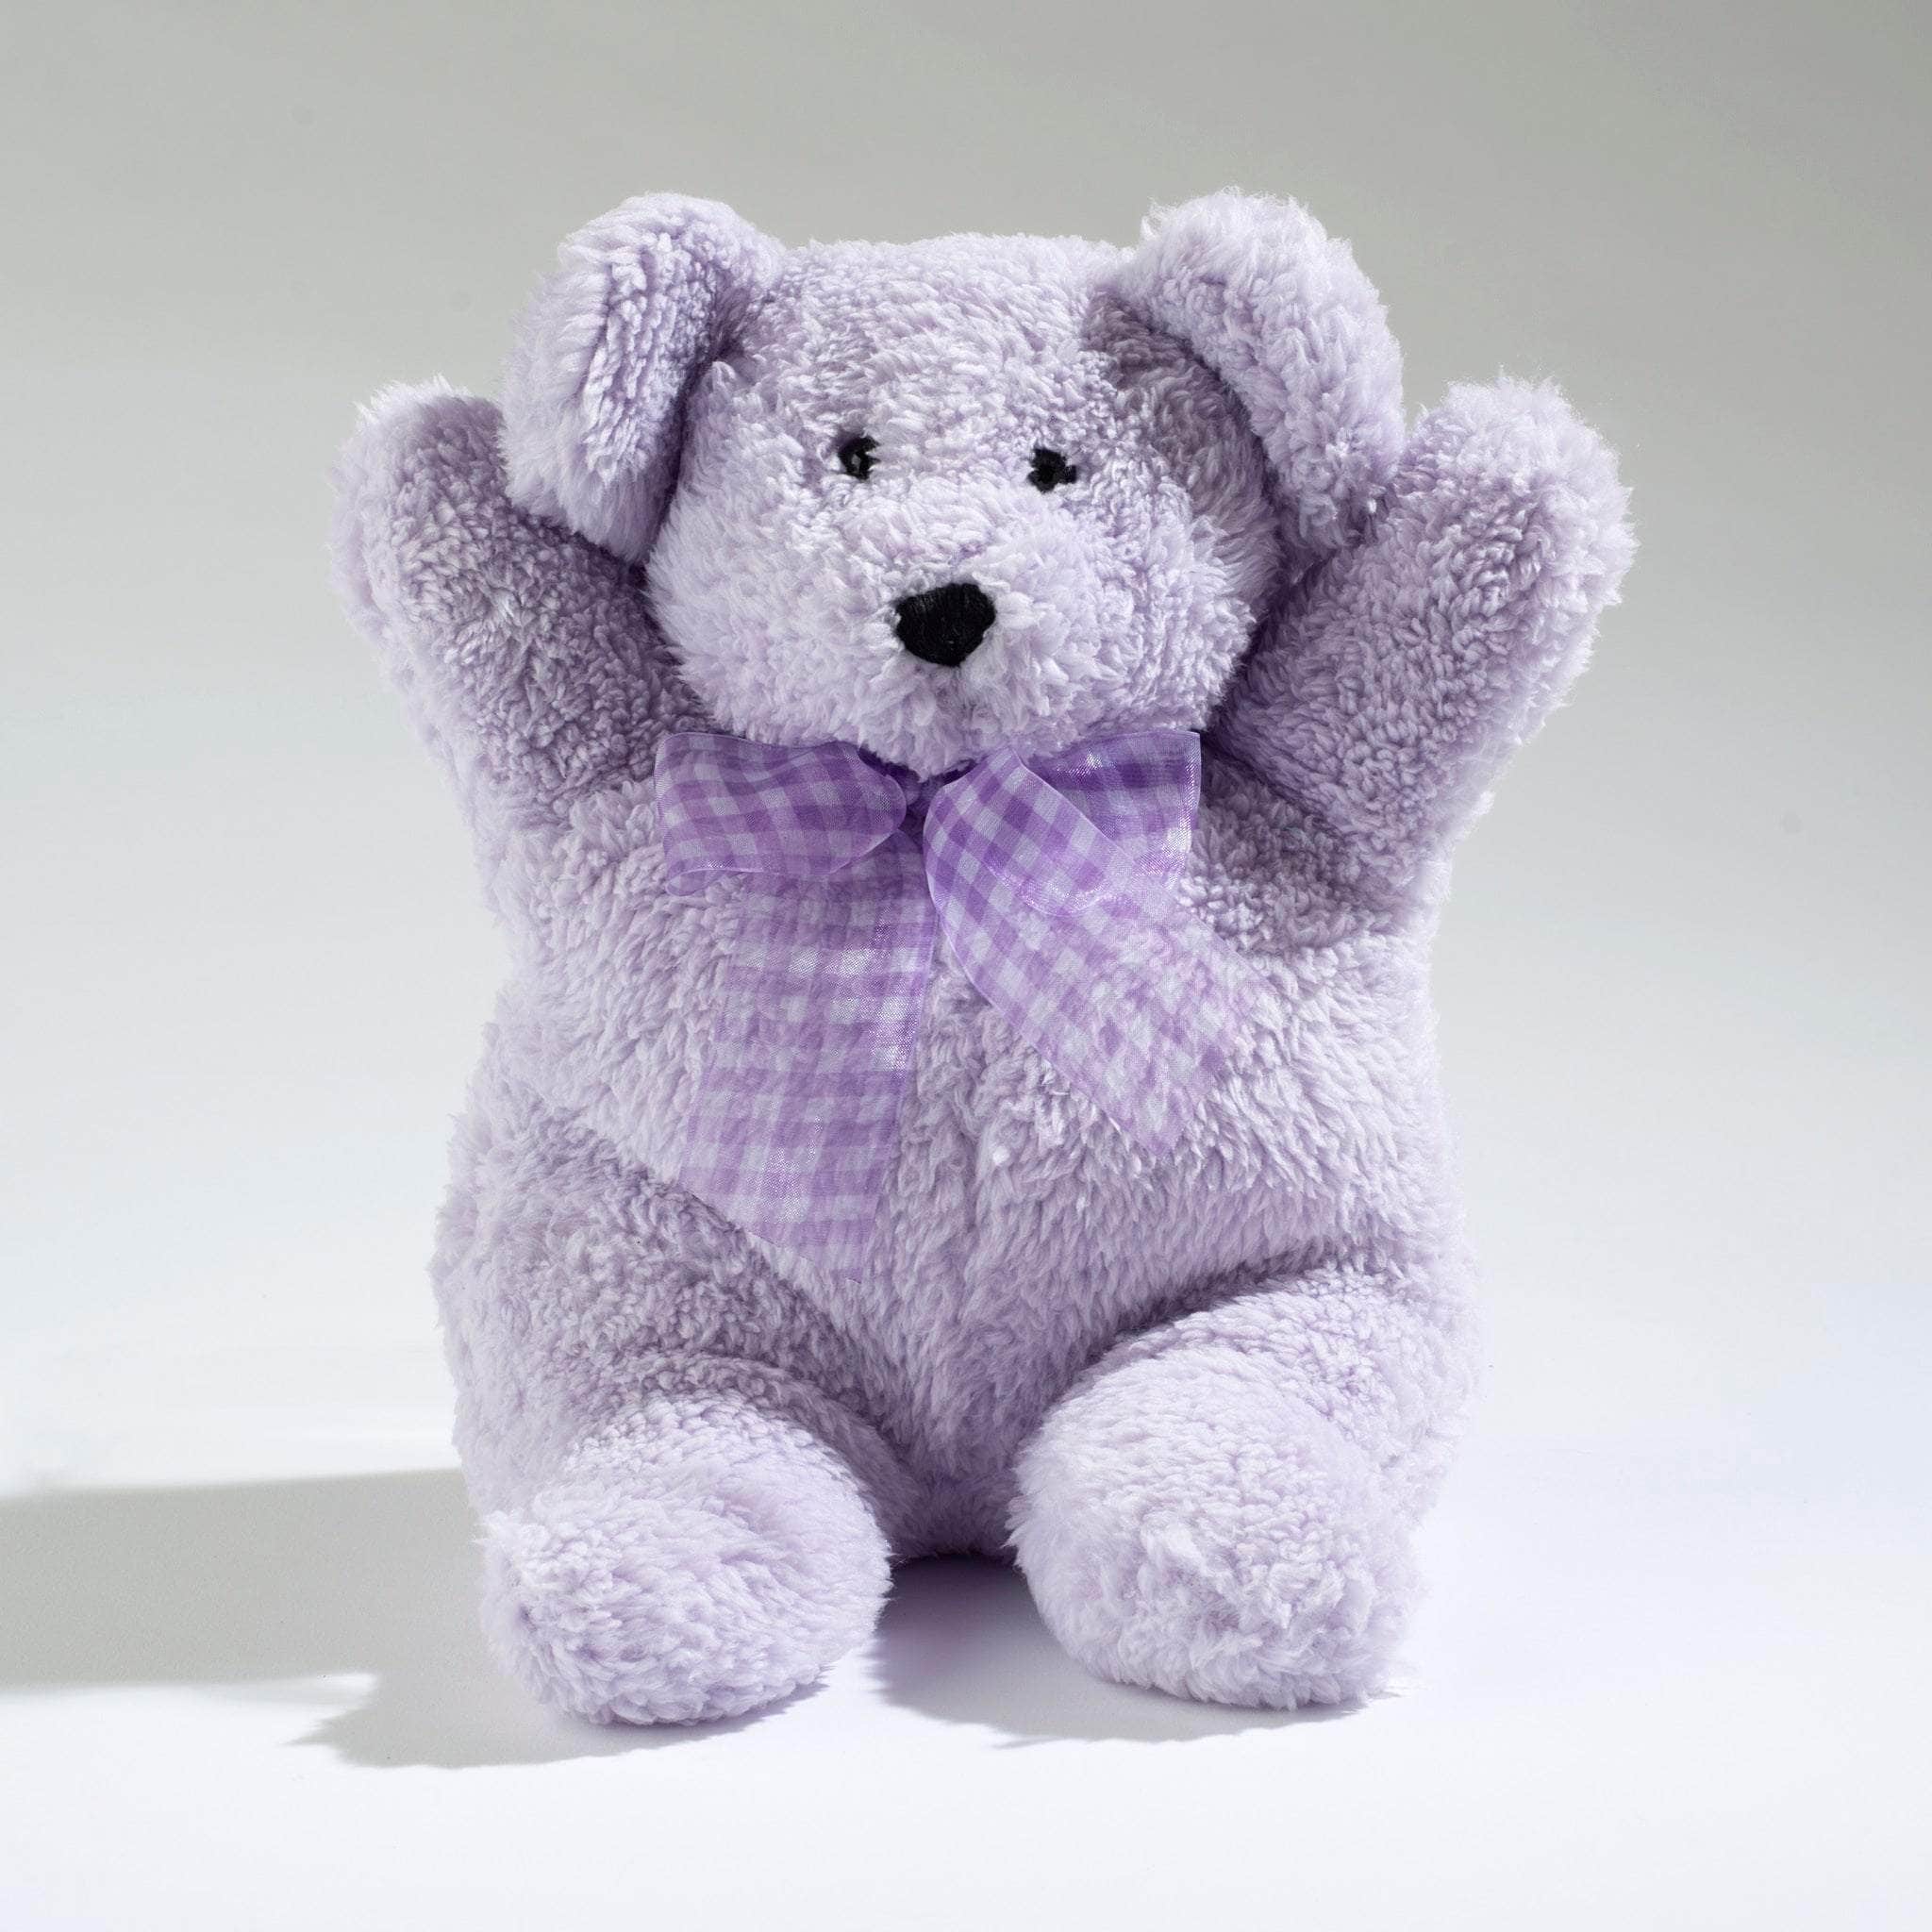 Heatable Huggable is Lavender Lou the Teddy Bear